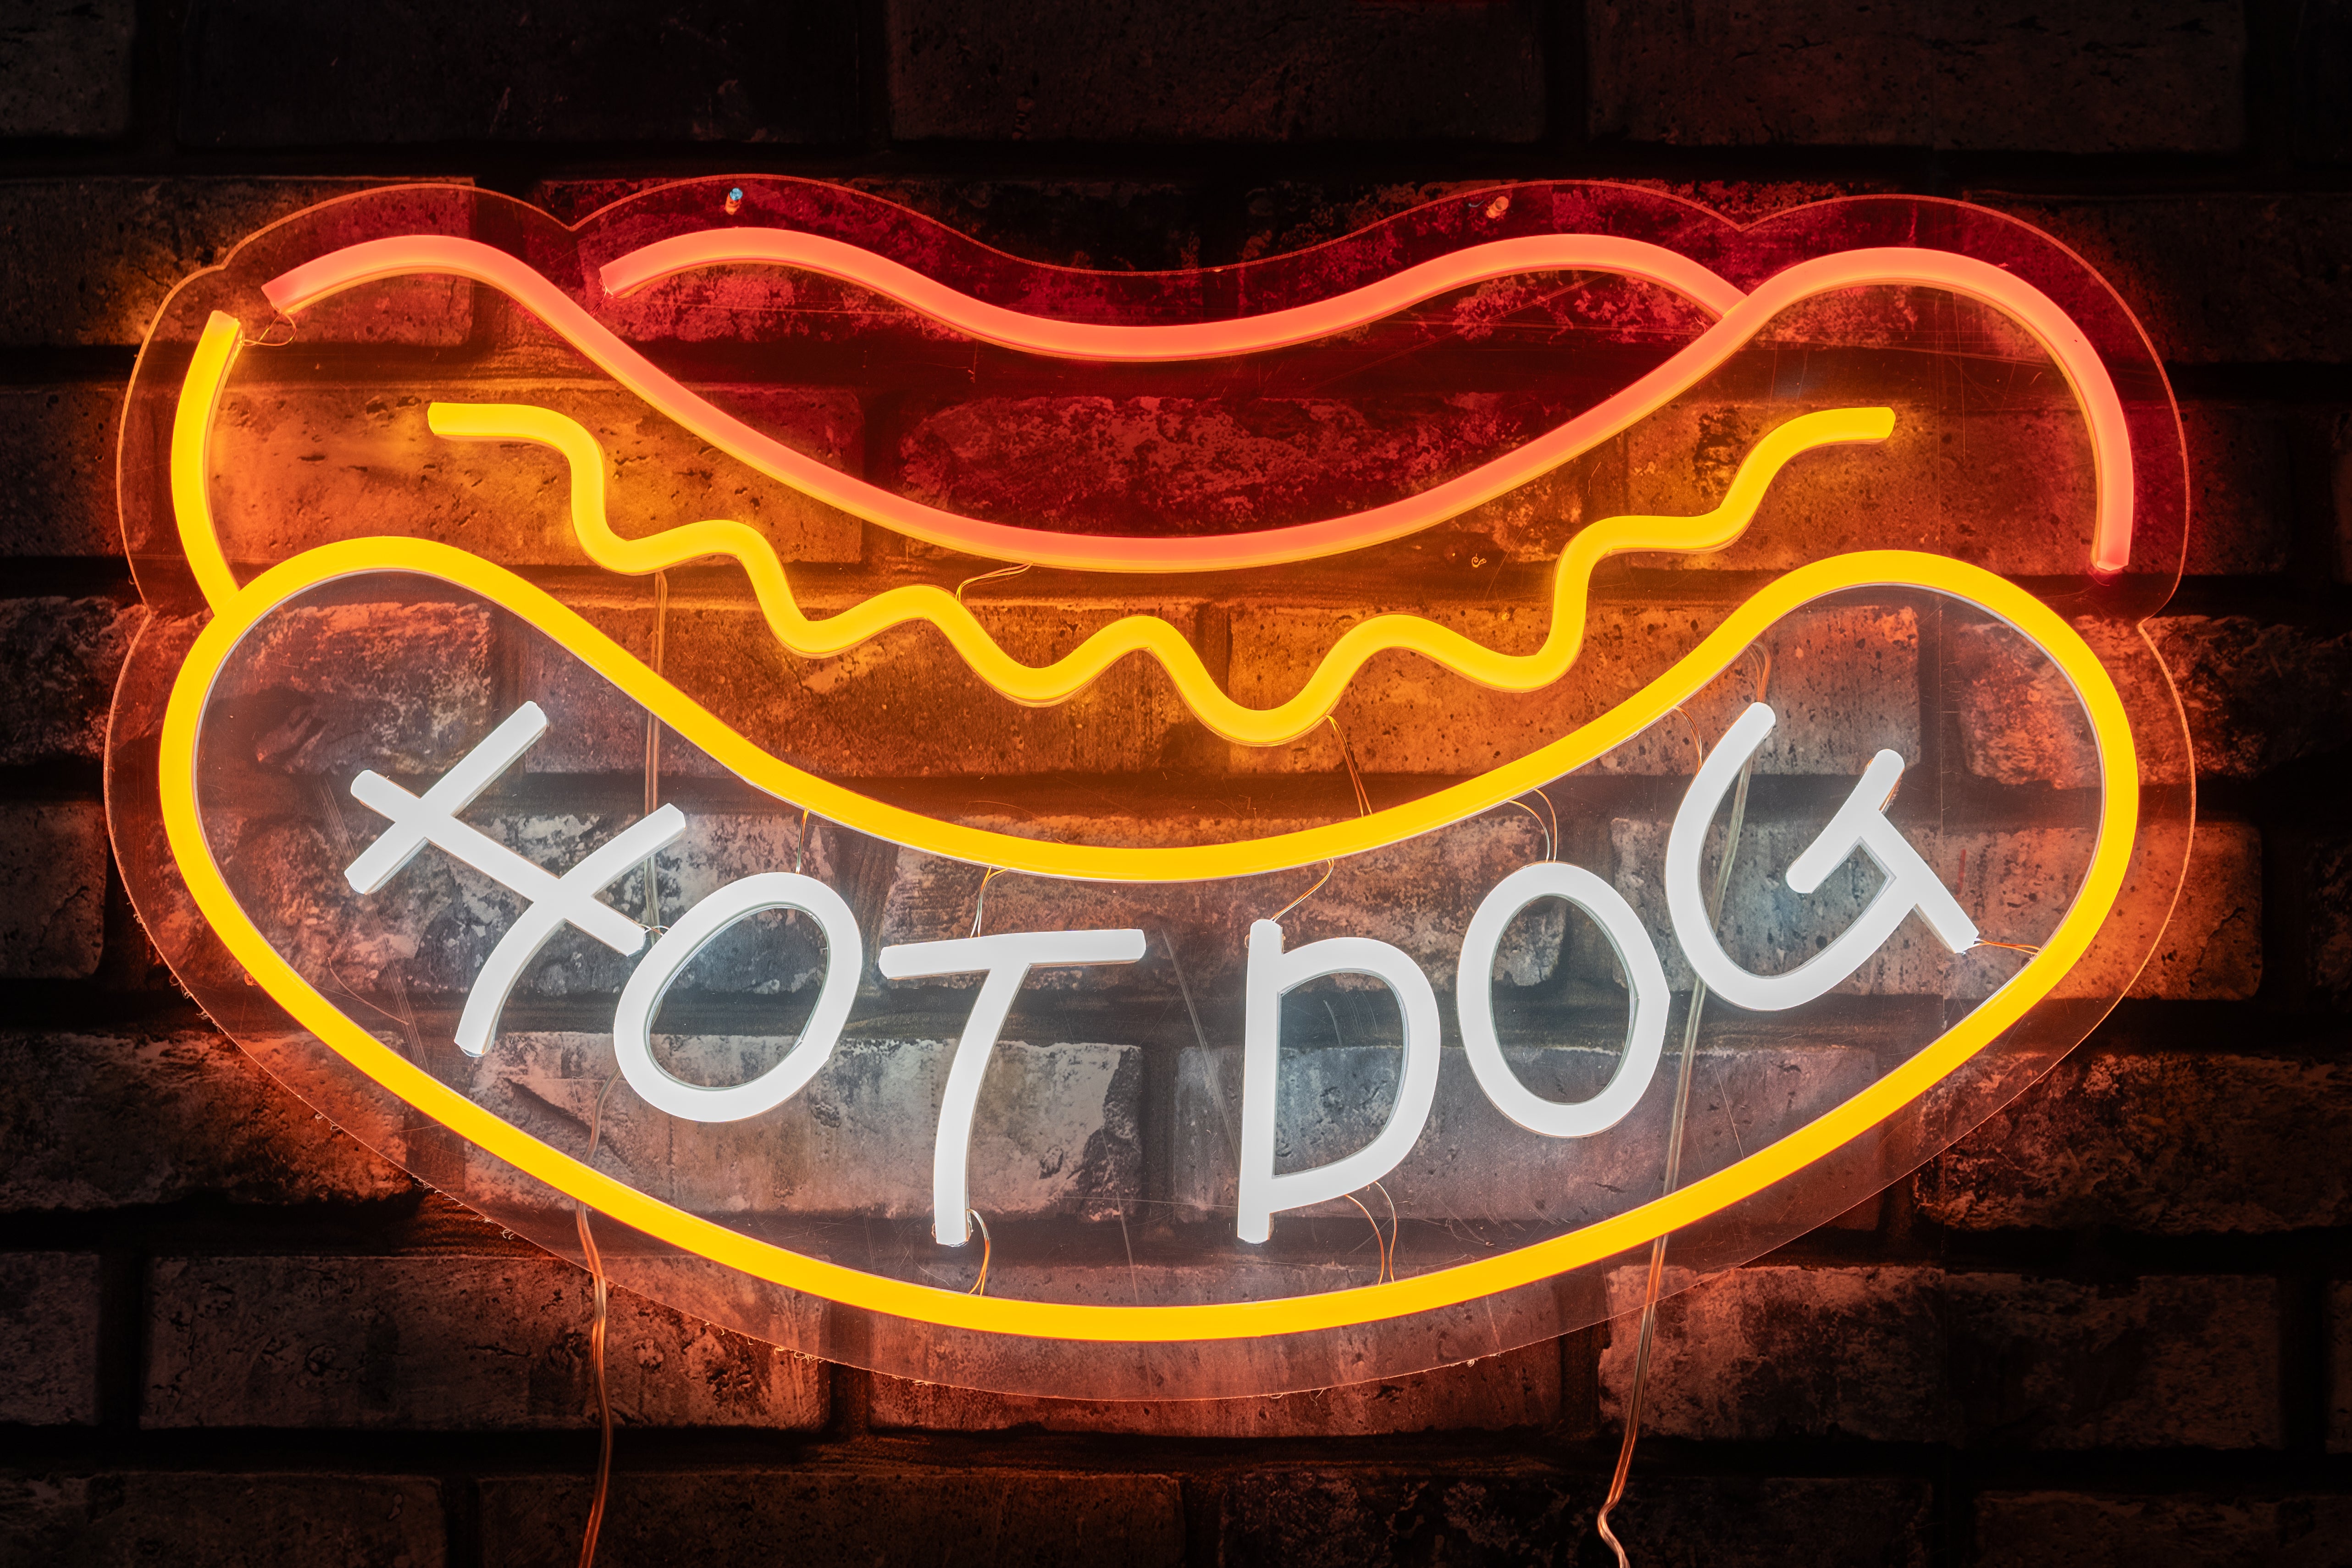 Hotdog Neon style LED light up sign